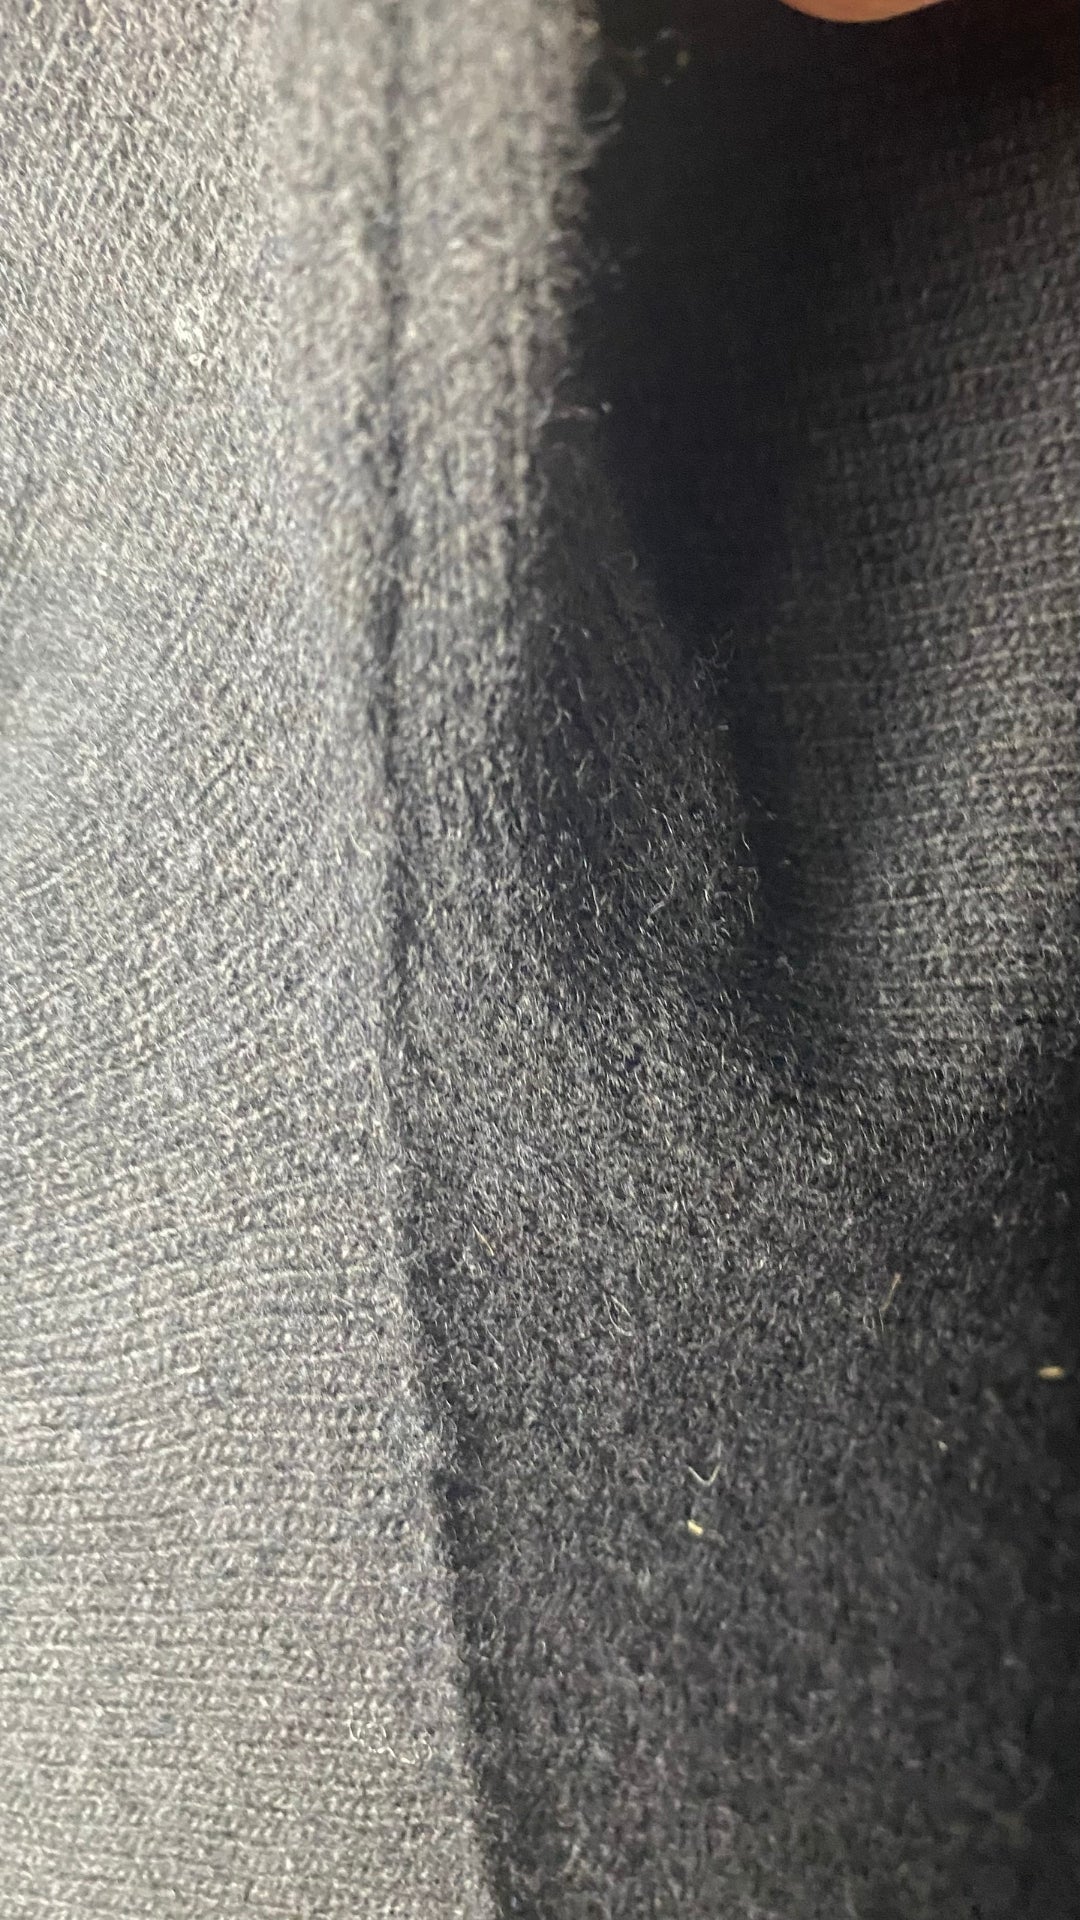 Robe tunique en tricot noir La fée Maraboutée, taille small (1). Vue de l'aisselle gauche.